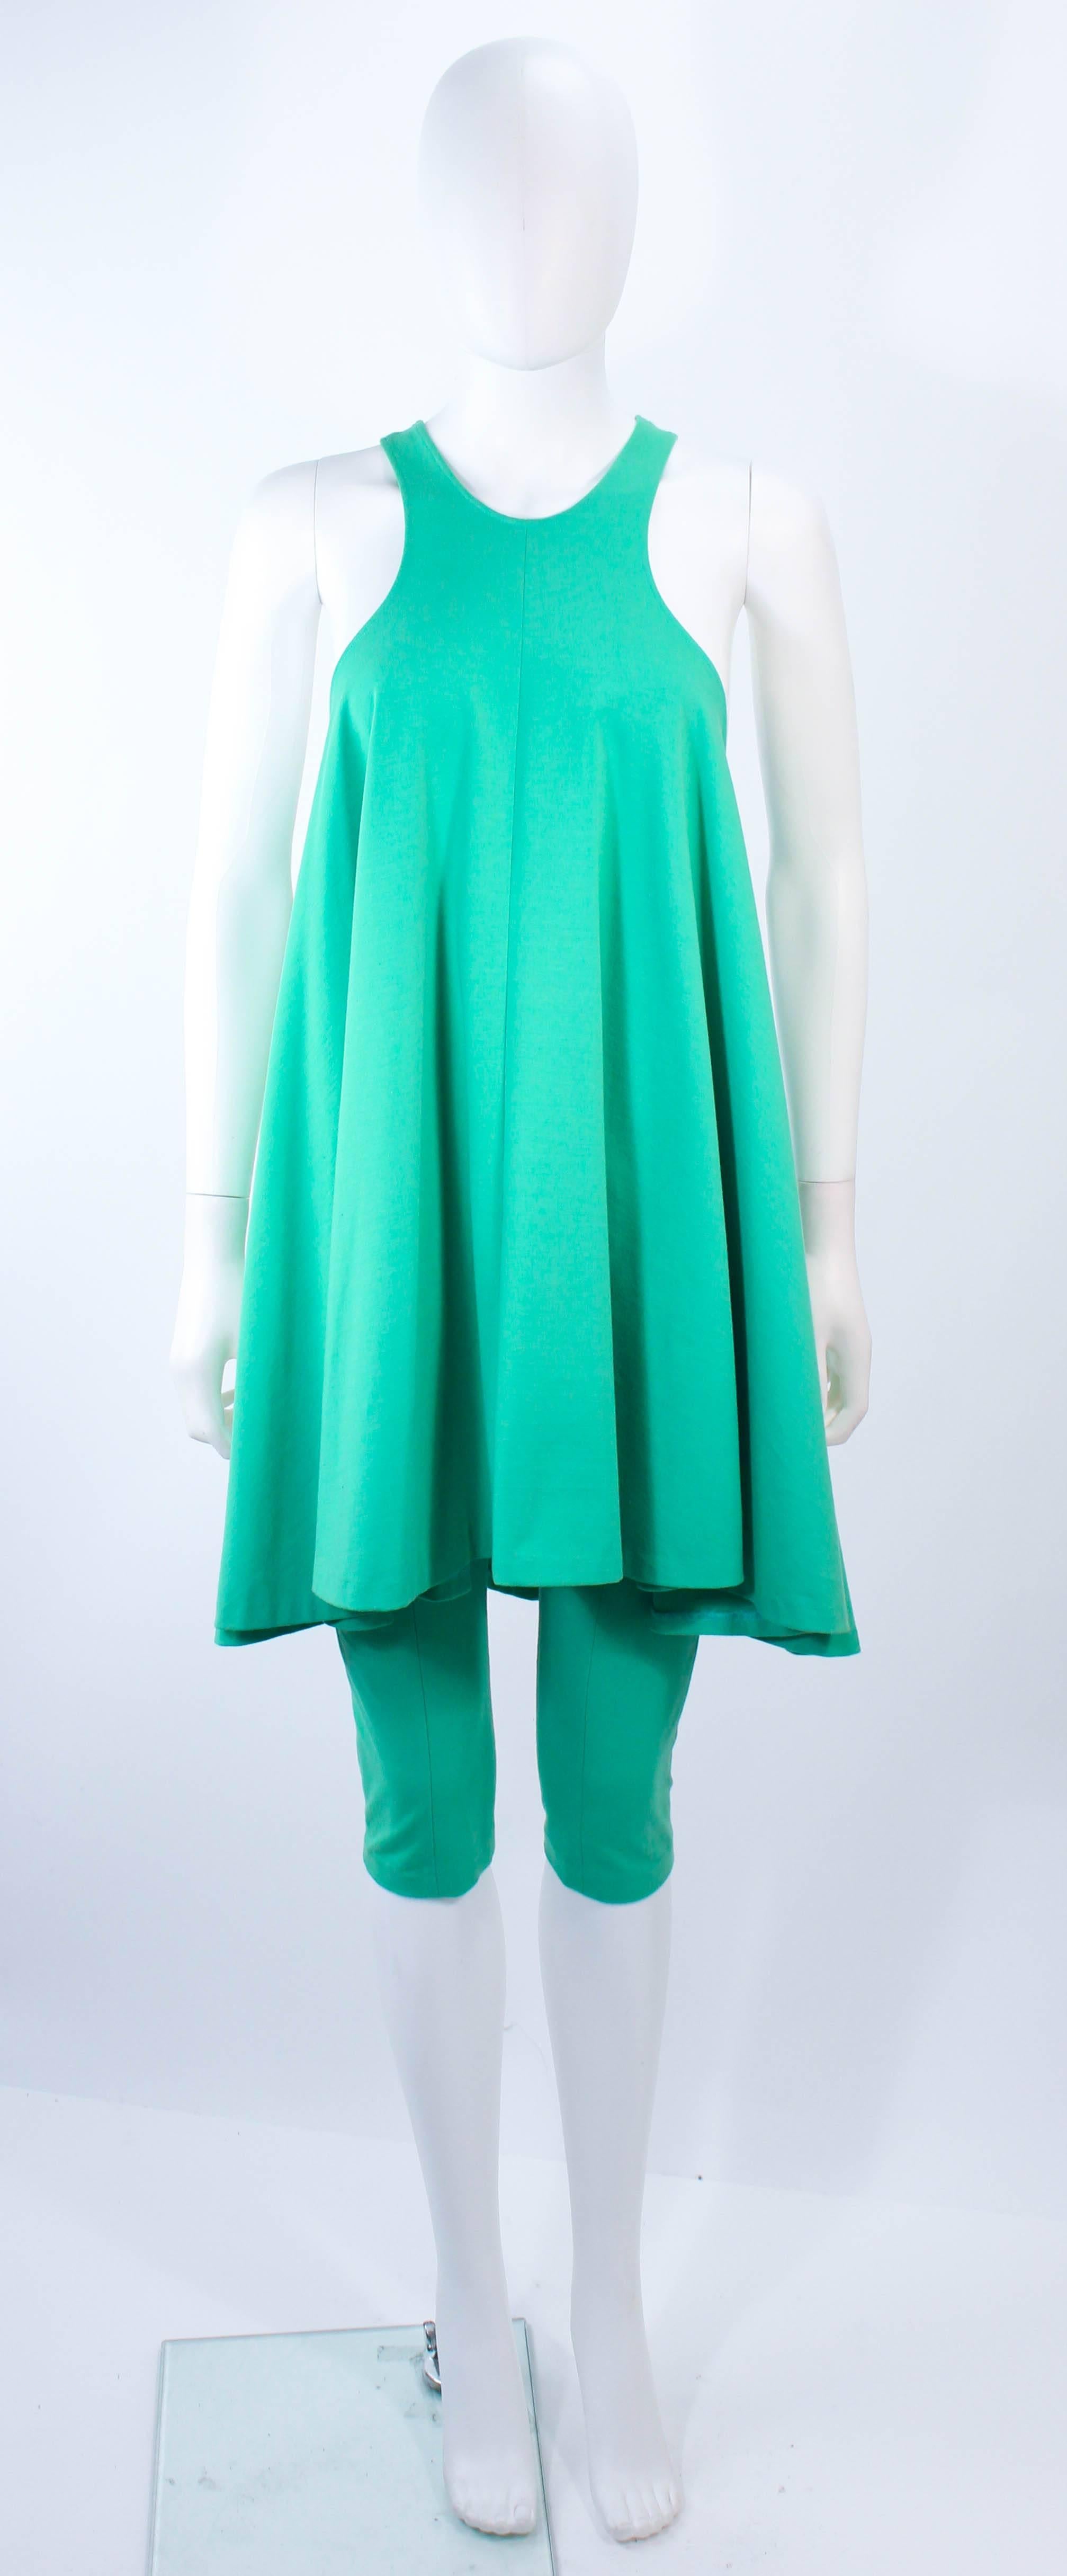 Diese alte Norma Kamali  set besteht aus einem mintgrünen Stretch-Strick. Ein Kleid im Trapez-Stil mit verkürzter Hose. In ausgezeichnetem Vintage-Zustand, normale altersbedingte Abnutzung.

**Bitte vergleichen Sie die Maße für Ihre persönliche